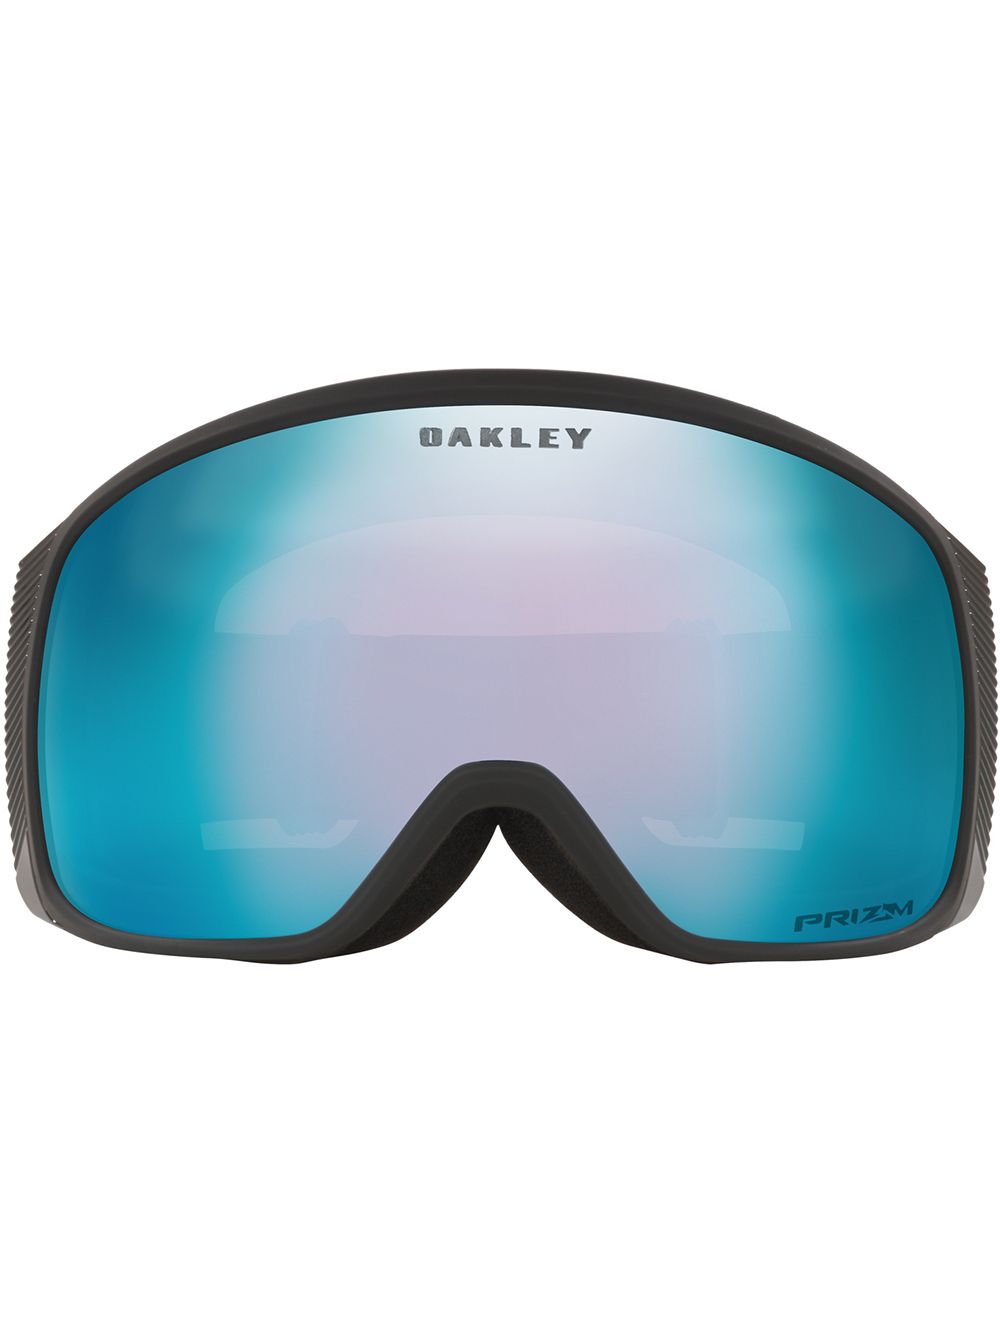 Flight Tracker ski goggles